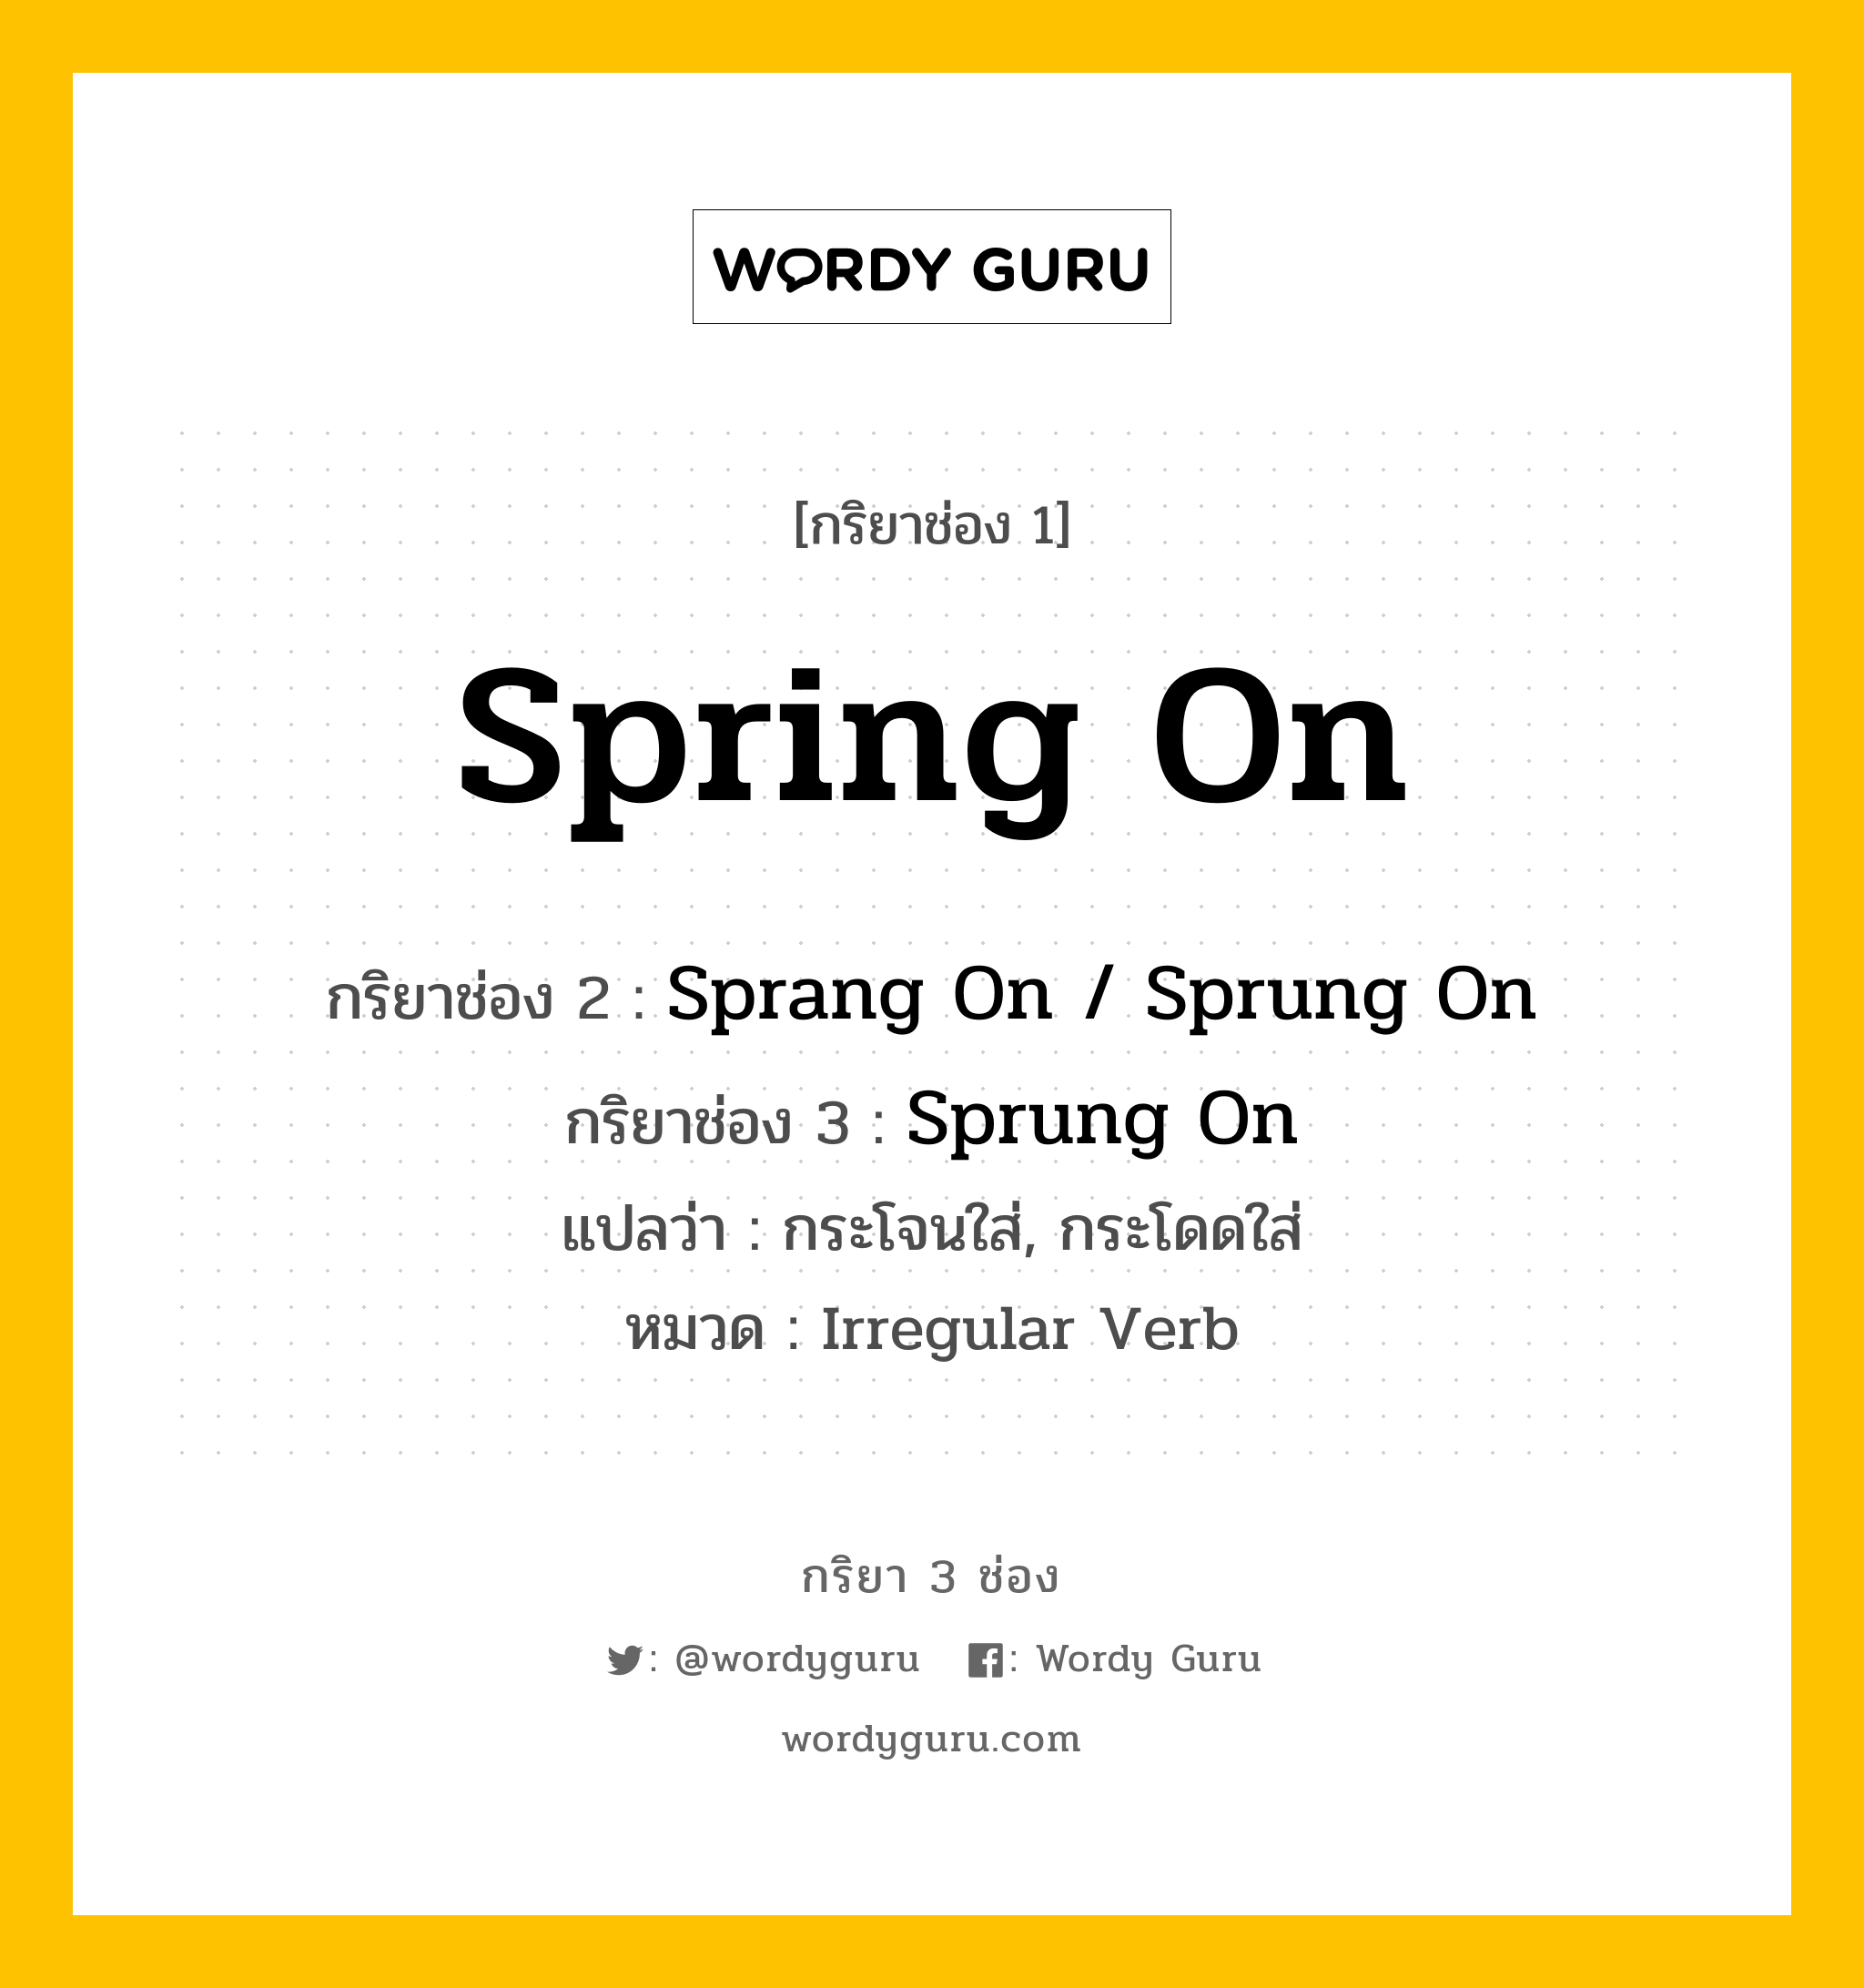 กริยา 3 ช่อง ของ Spring On คืออะไร? มาดูคำอ่าน คำแปลกันเลย, กริยาช่อง 1 Spring On กริยาช่อง 2 Sprang On / Sprung On กริยาช่อง 3 Sprung On แปลว่า กระโจนใส่, กระโดดใส่ หมวด Irregular Verb หมวด Irregular Verb